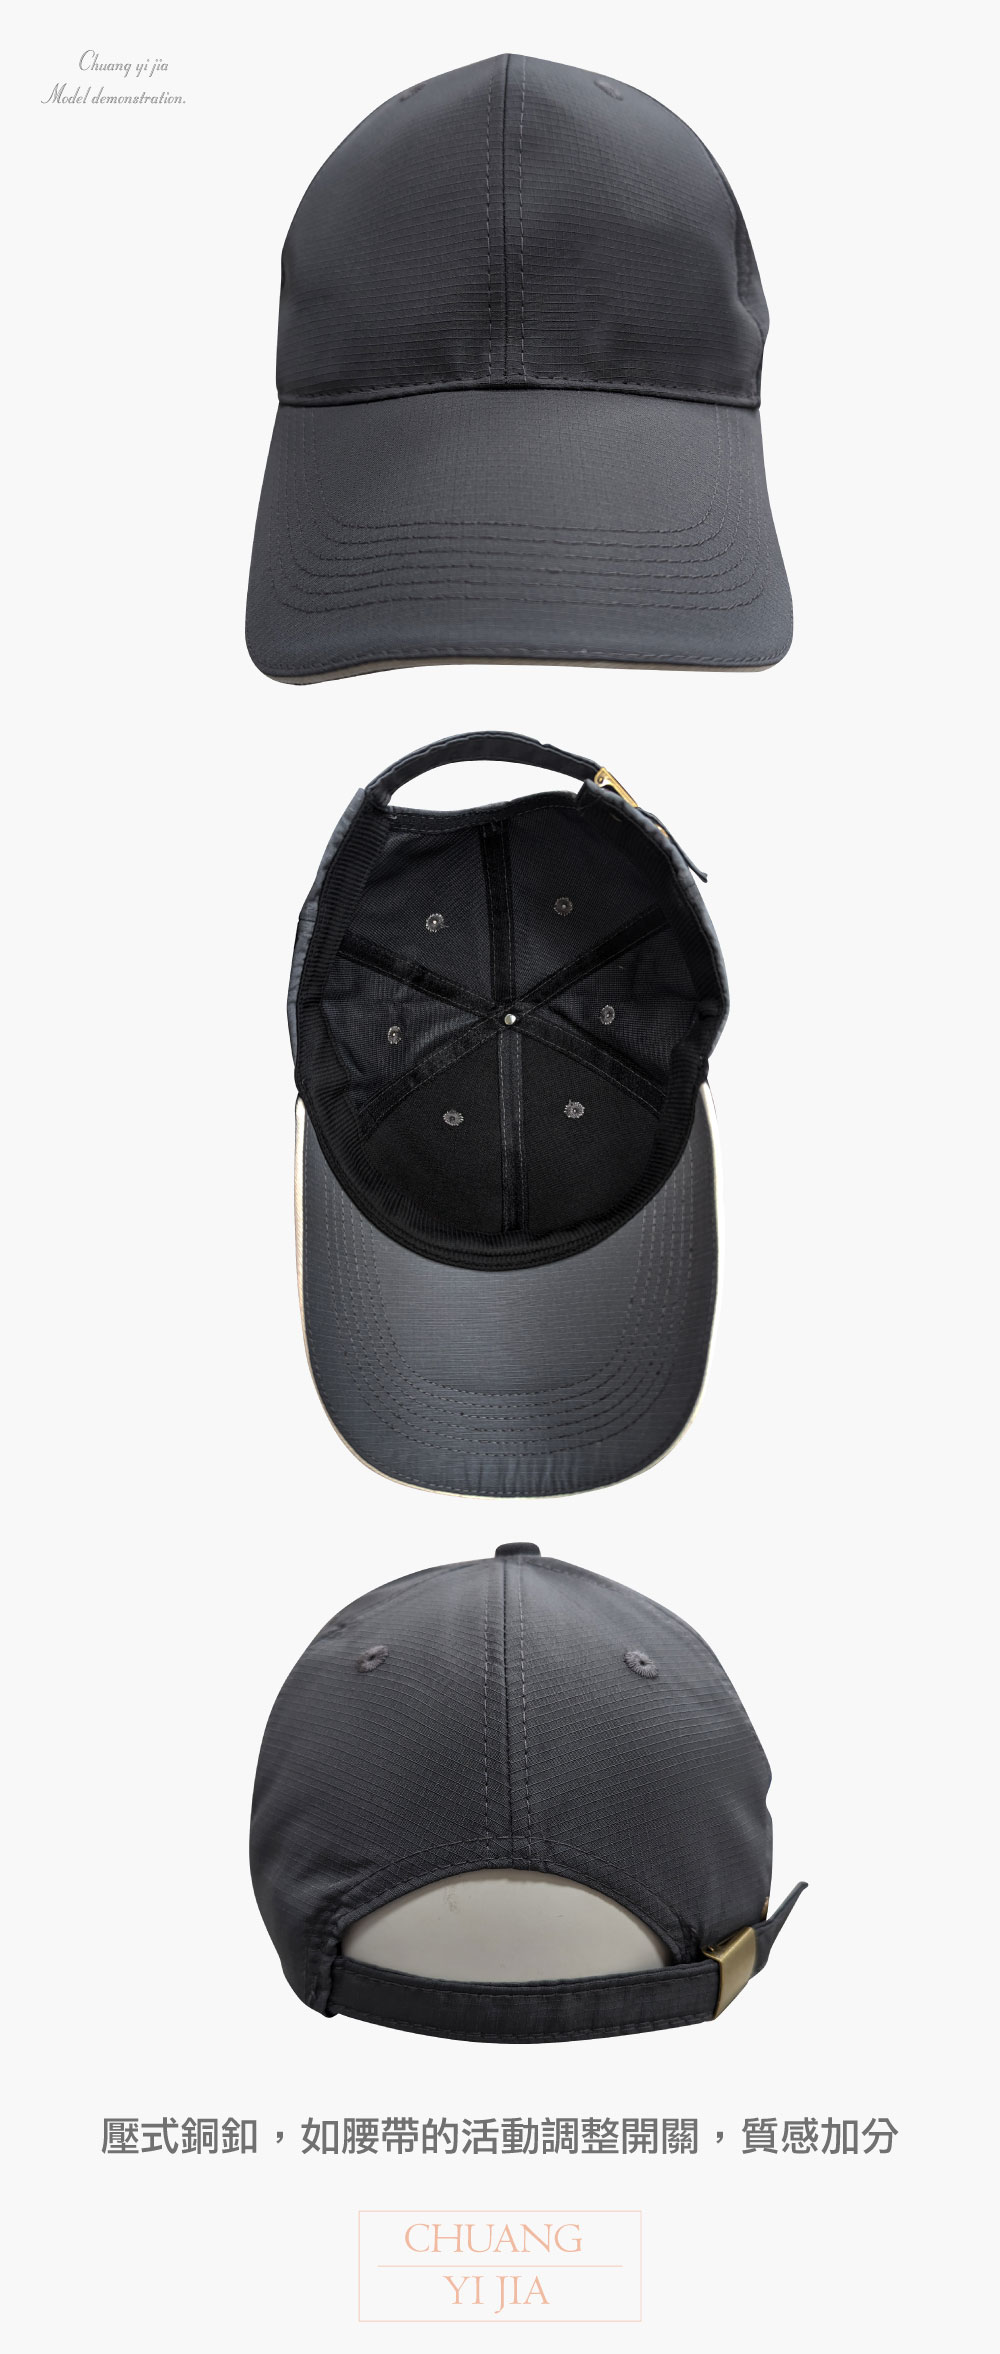 創意家團體服-六片帽 風衣格子布 訂製 深灰